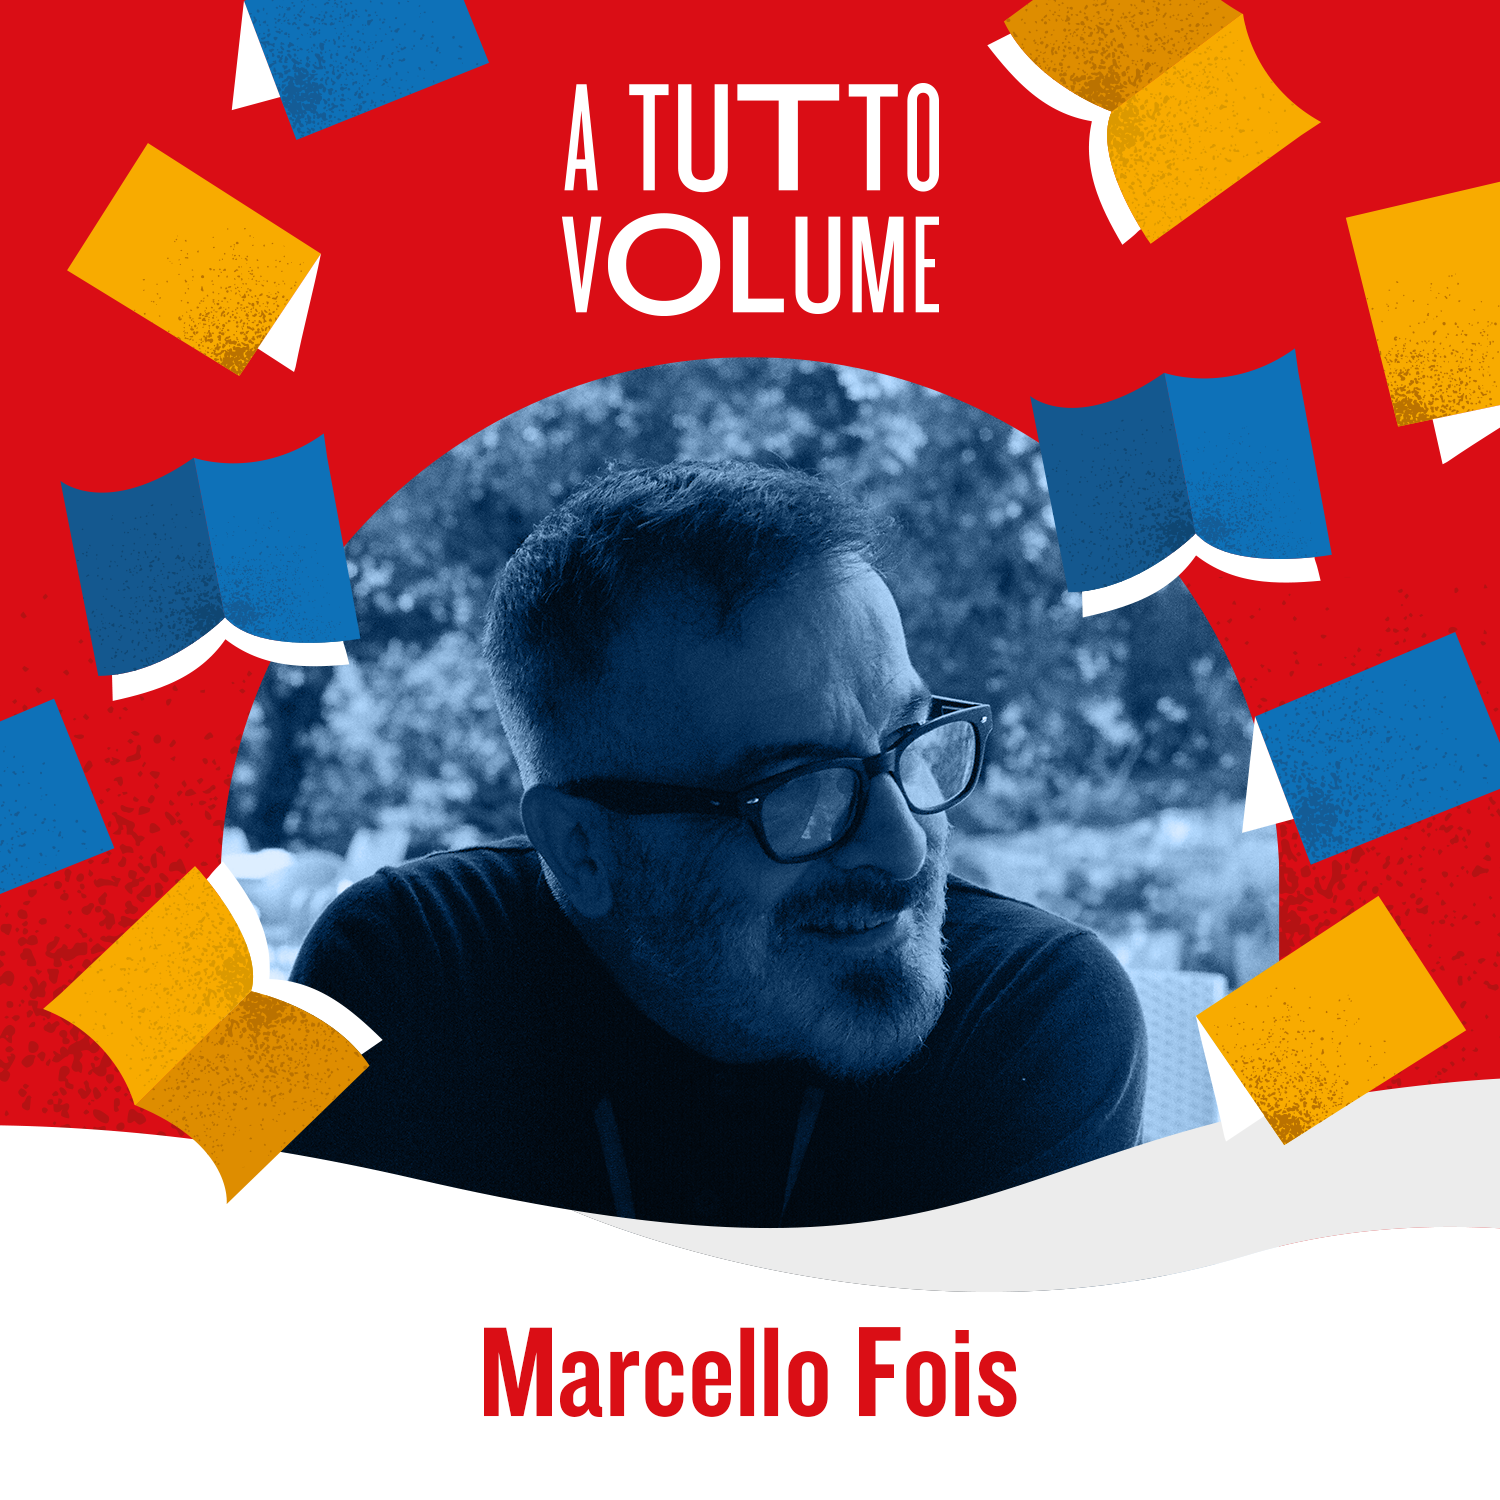 Marcello Fois Autore